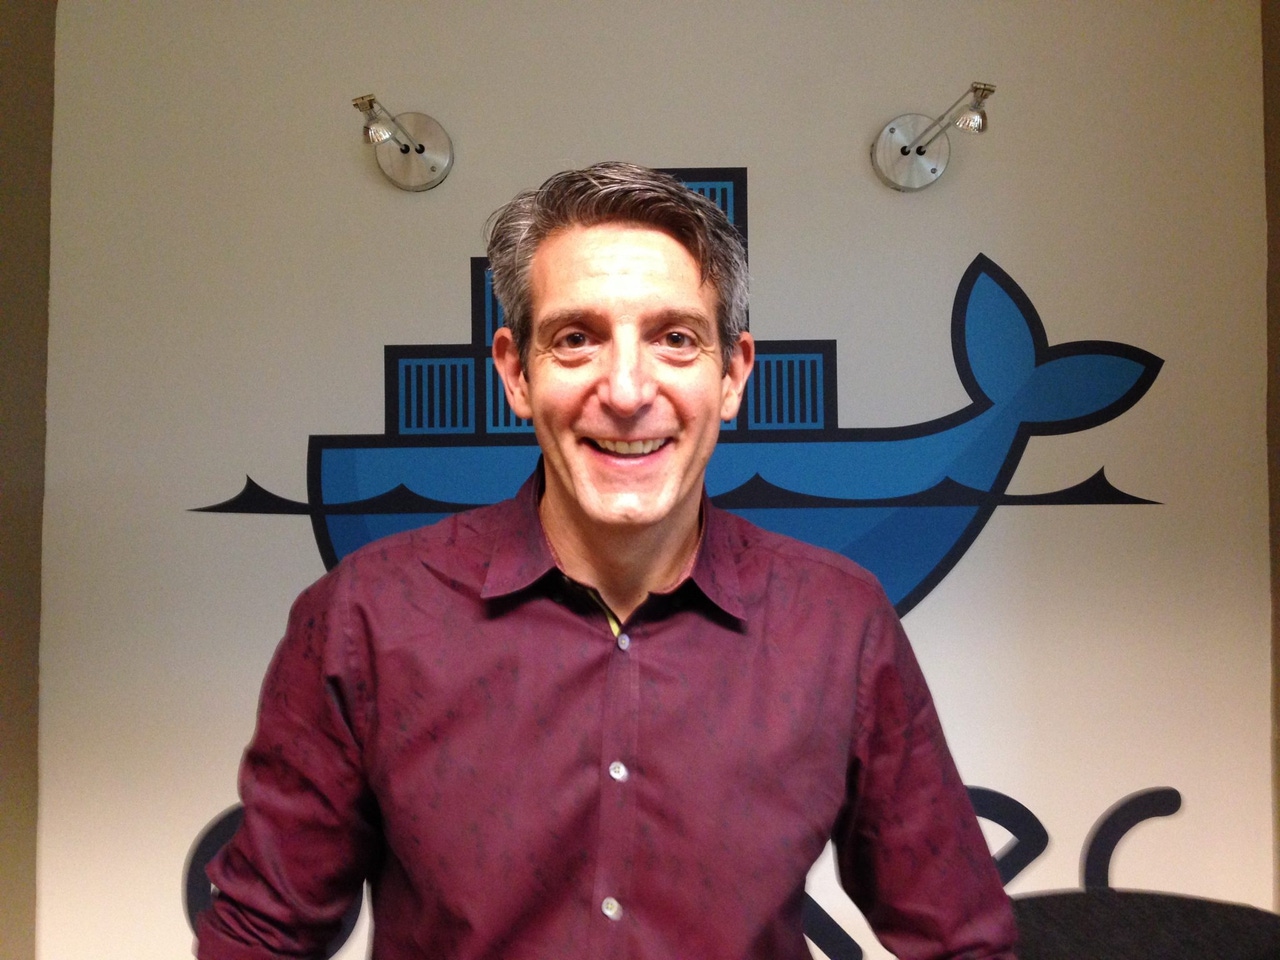 Docker Marketing VP David Messina